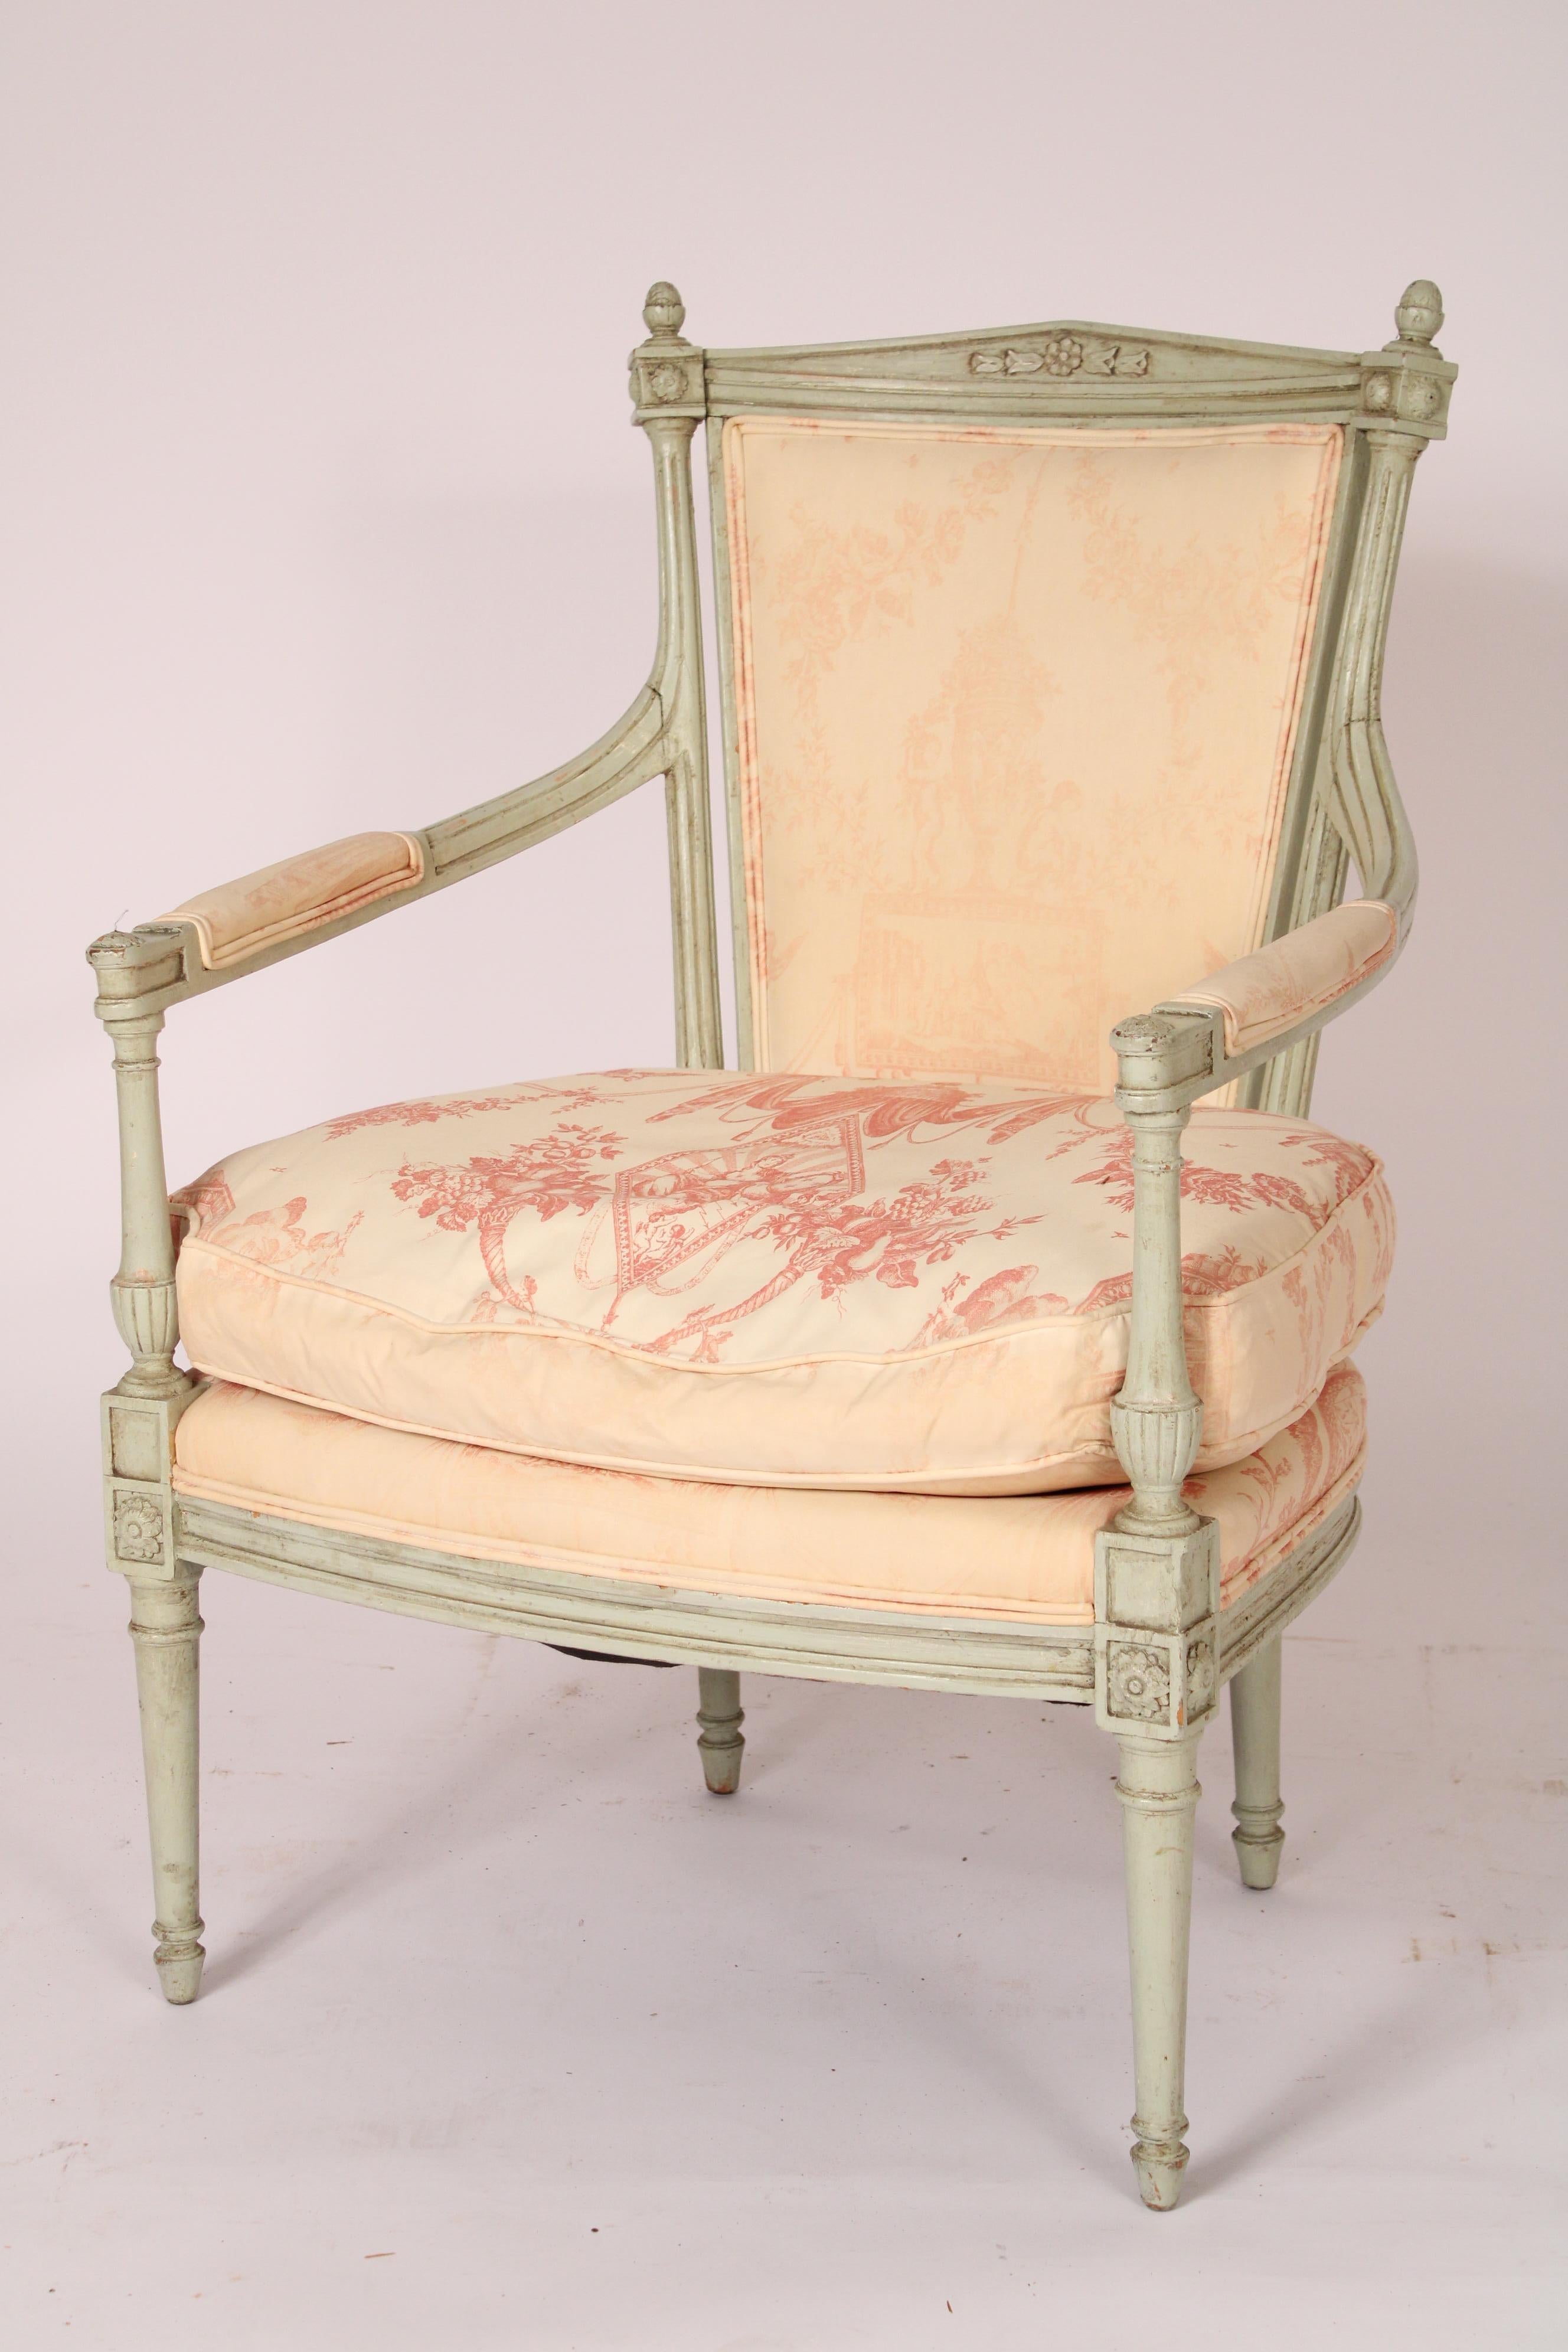 Paire de fauteuils anciens peints de style Directoire, vers 1900. Les accoudoirs sont de forme triangulaire et flanqués de fleurons en forme de glands. Les supports d'accoudoirs sont en forme de vase allongé et les pieds sont tournés et fuselés.